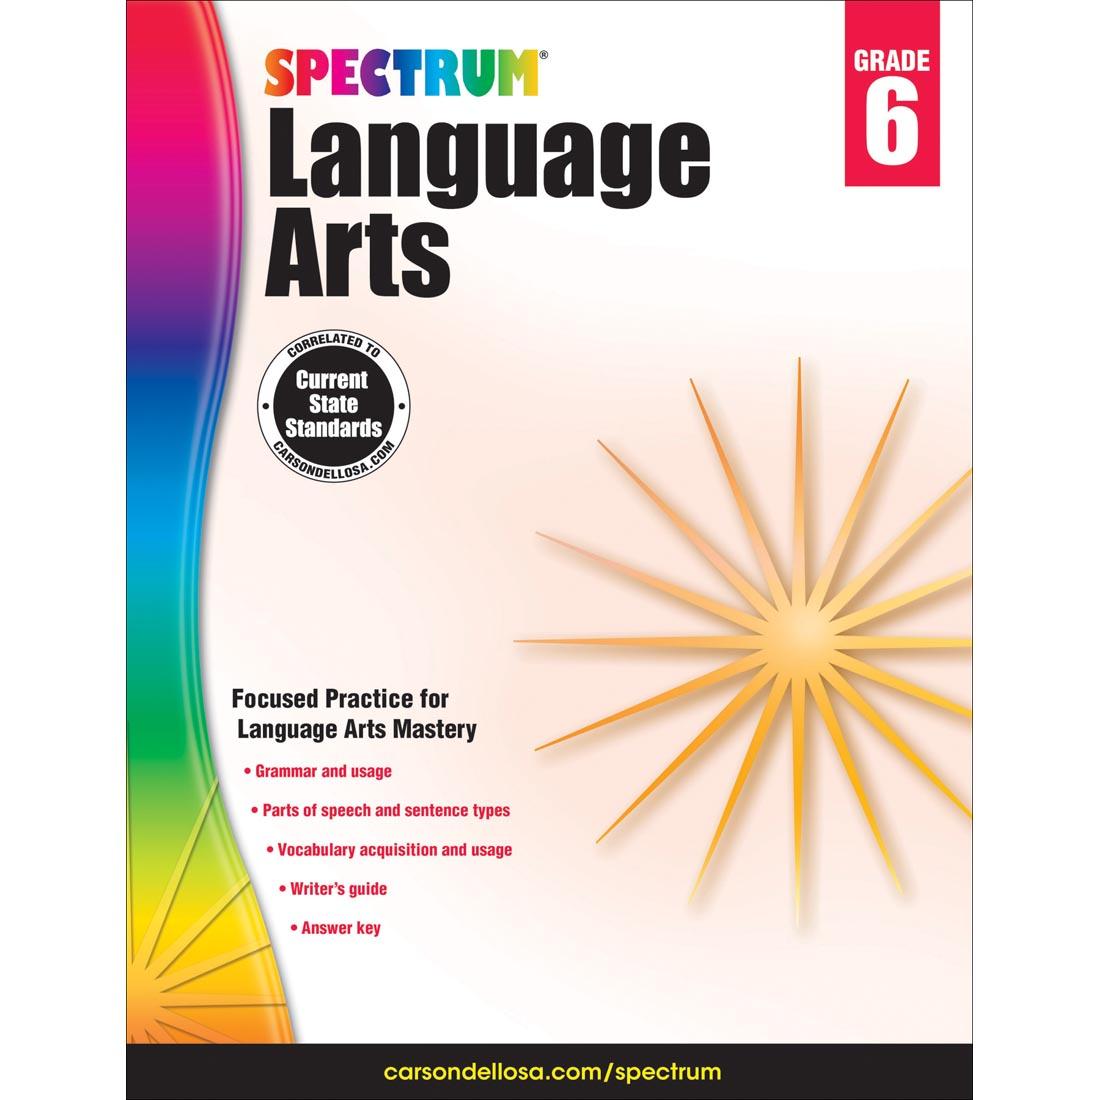 Spectrum Language Arts Book by Carson Dellosa Grade 6